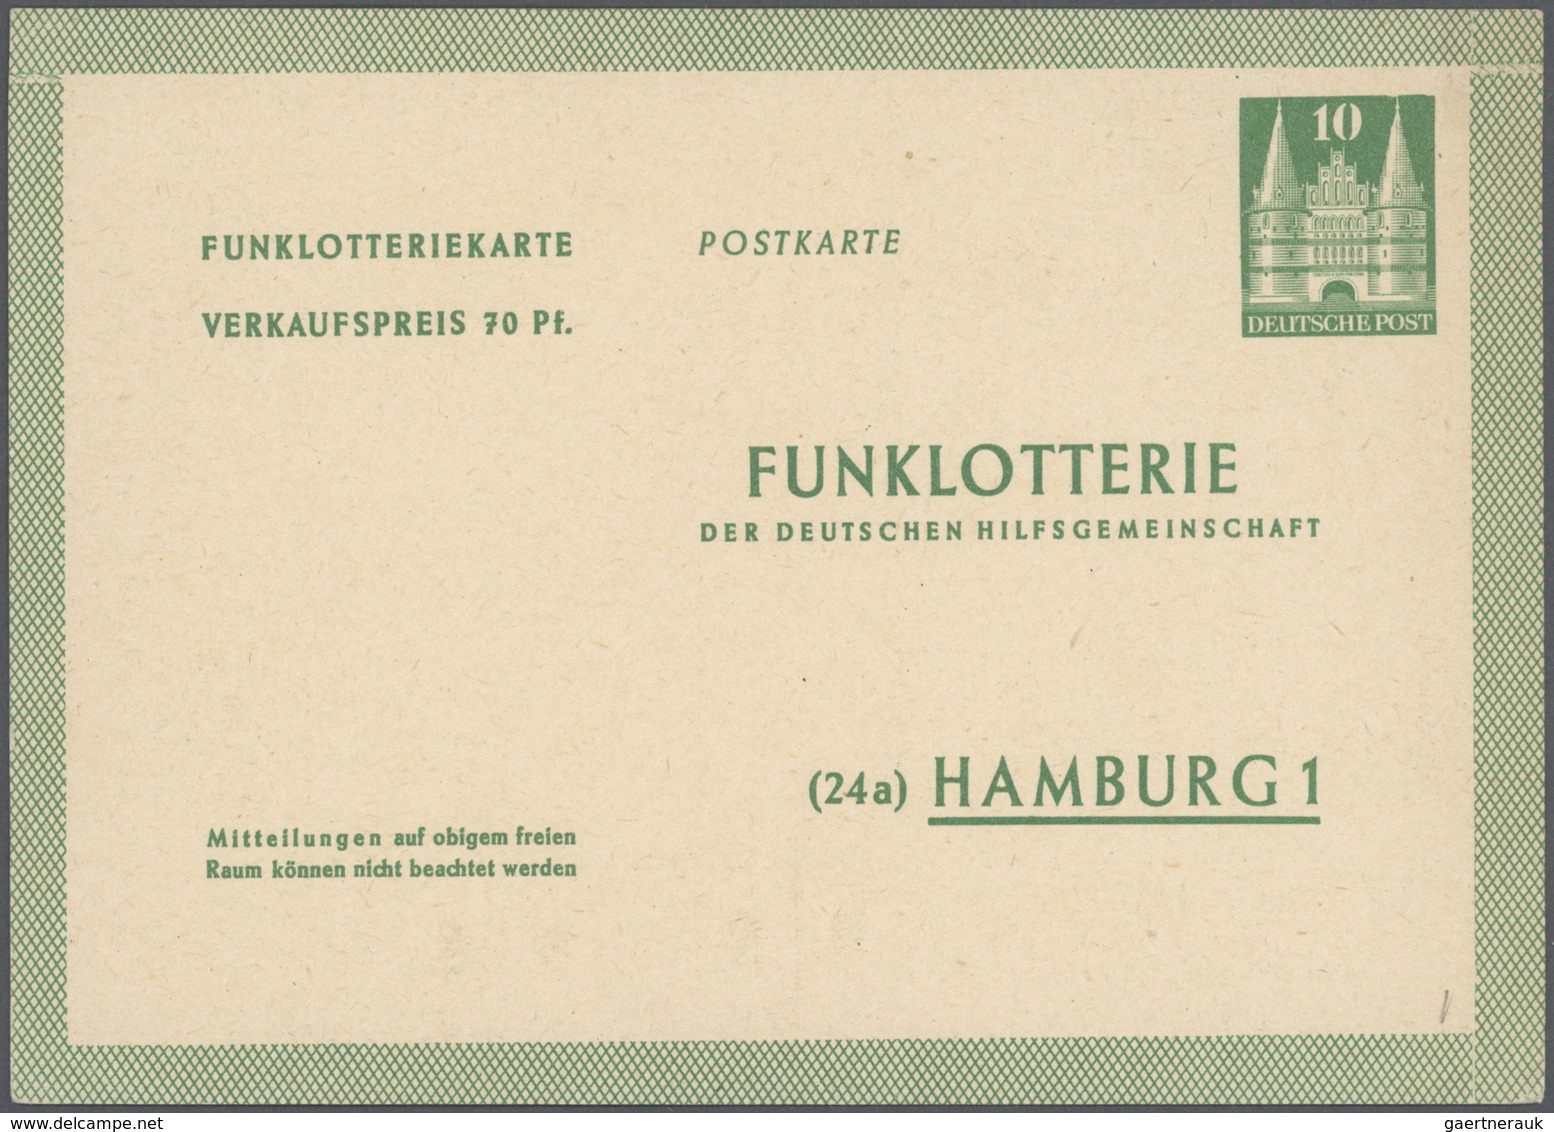 32846 Bundesrepublik - Ganzsachen: 1948/2011. Umfangreiche Sammlung mit einigen hundert Karten, Luftpostle